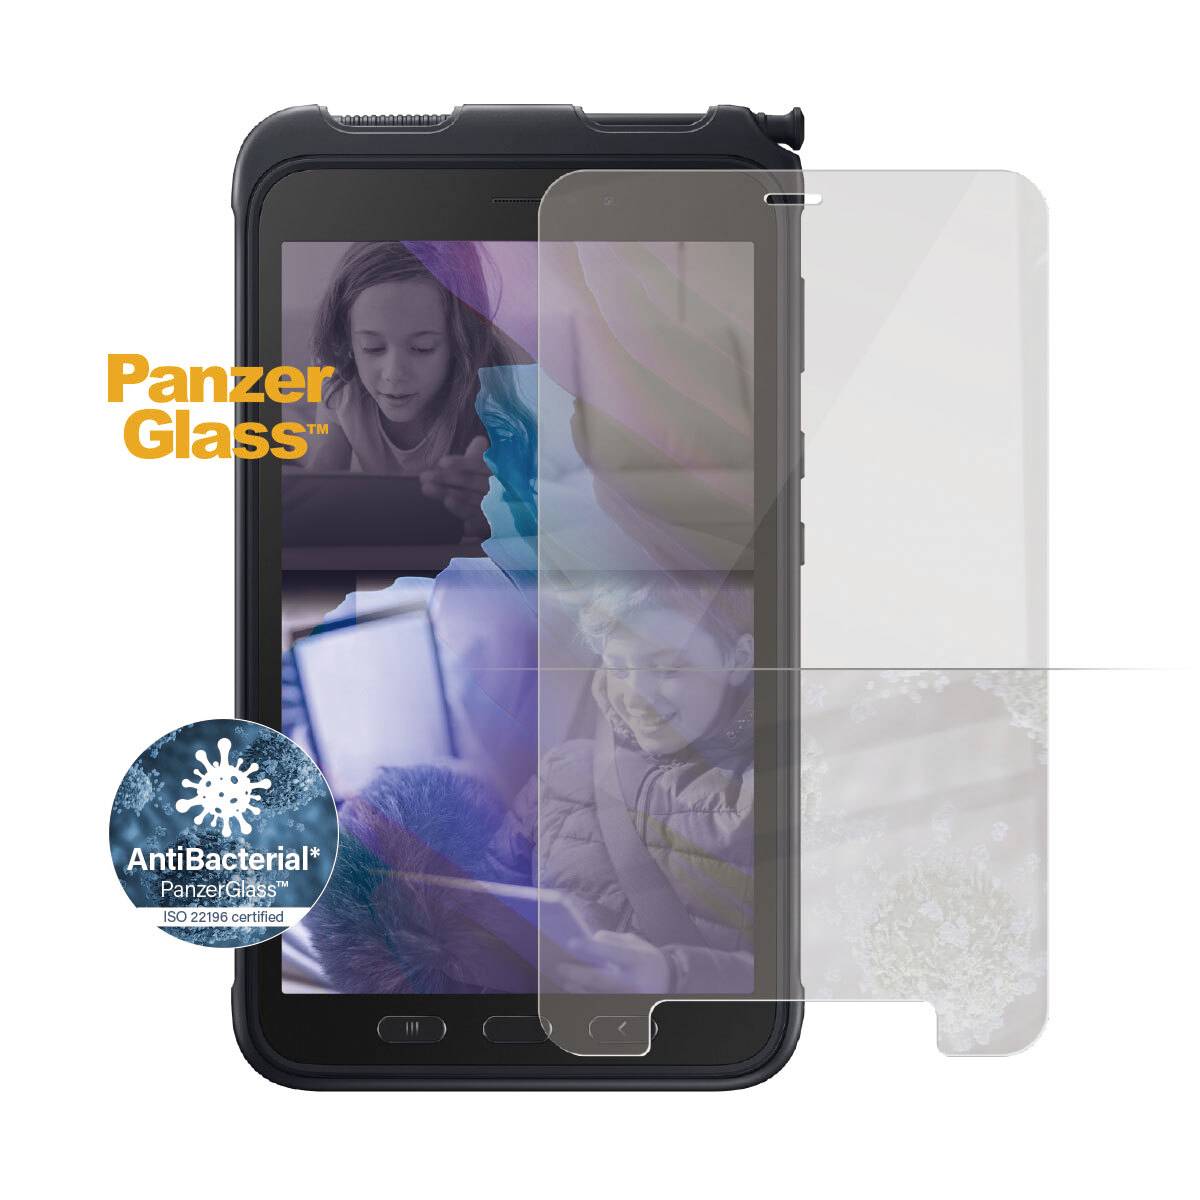 PANZERGLASS Case Friendly - Bildschirmschutz für Tablet - Glas - kristallklar - für Samsung Galaxy T